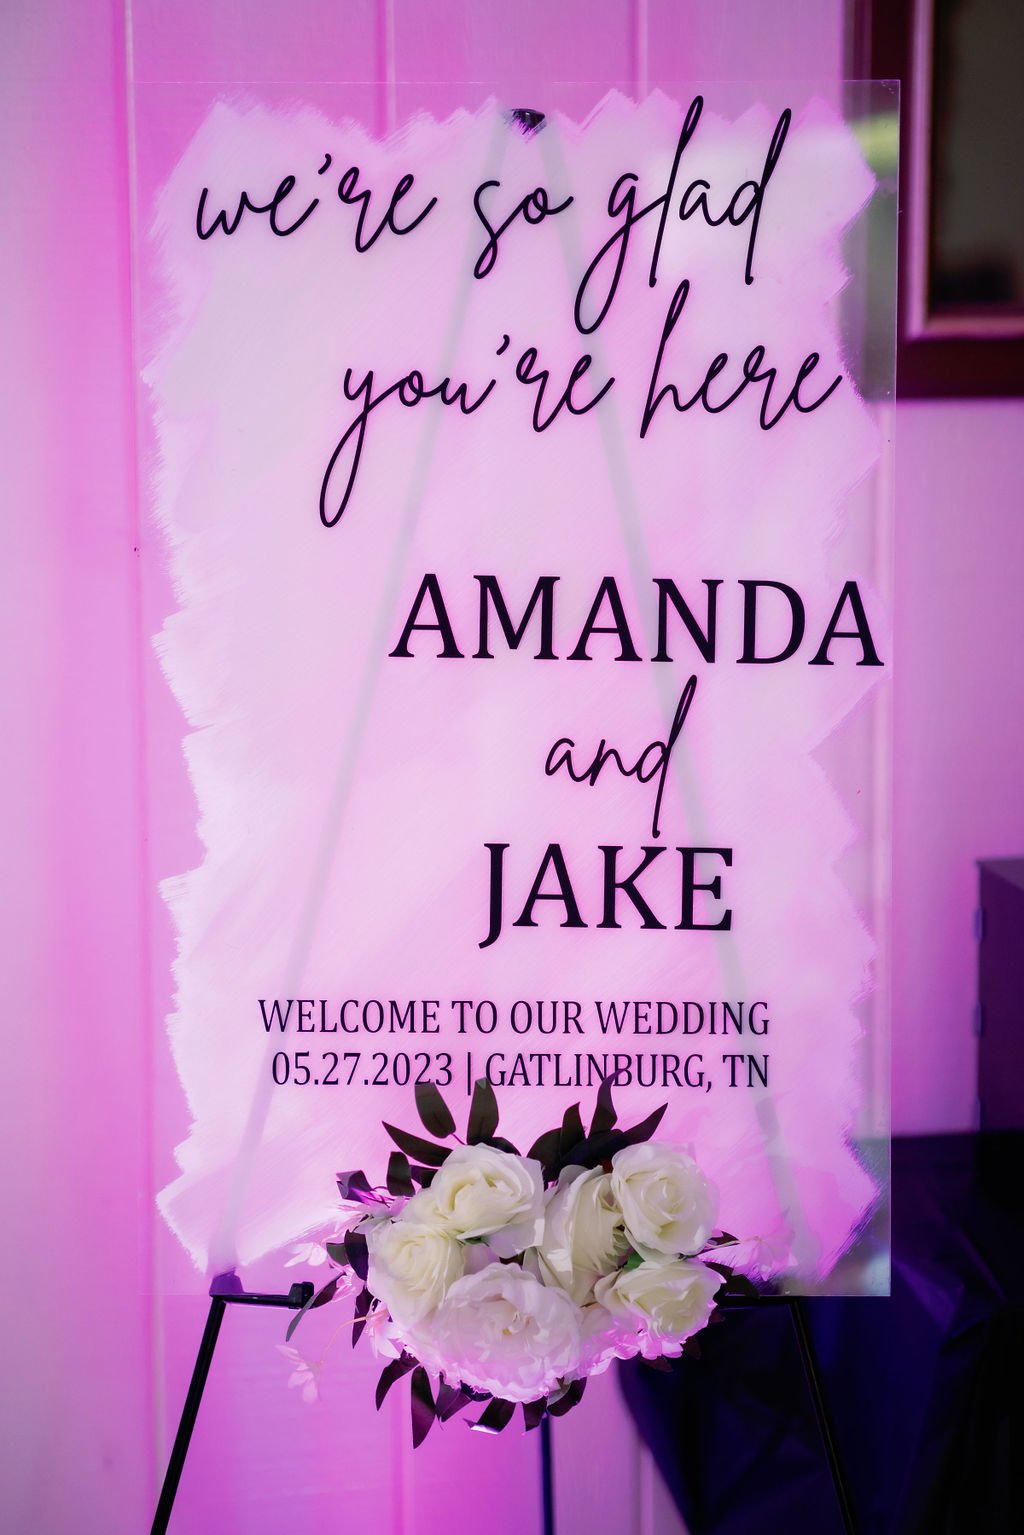 Gatlinburg-Wedding-Ceremony-Tips-wedding-signage